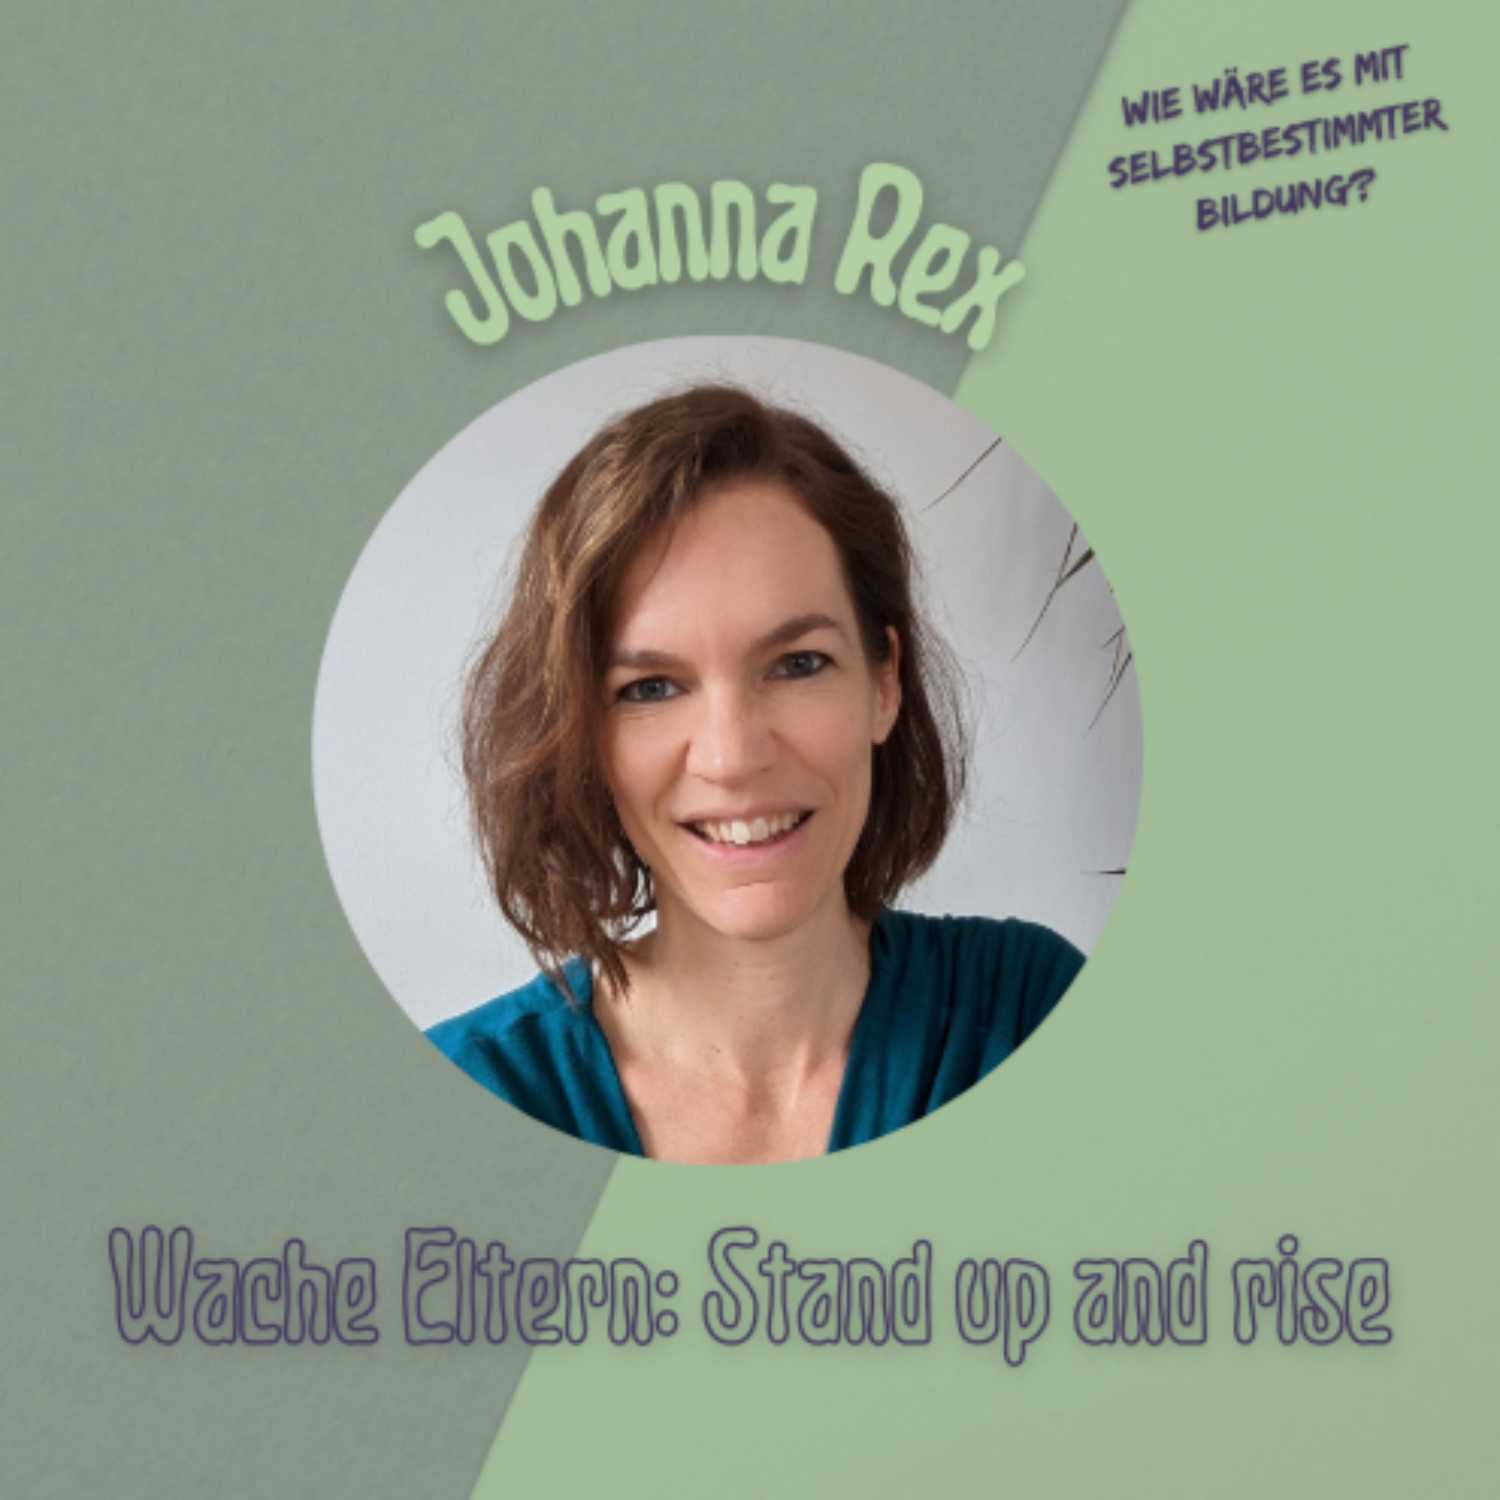 Wache Eltern: Stand up and rise - Max Sauber im Gespräch mit Johanna Rex